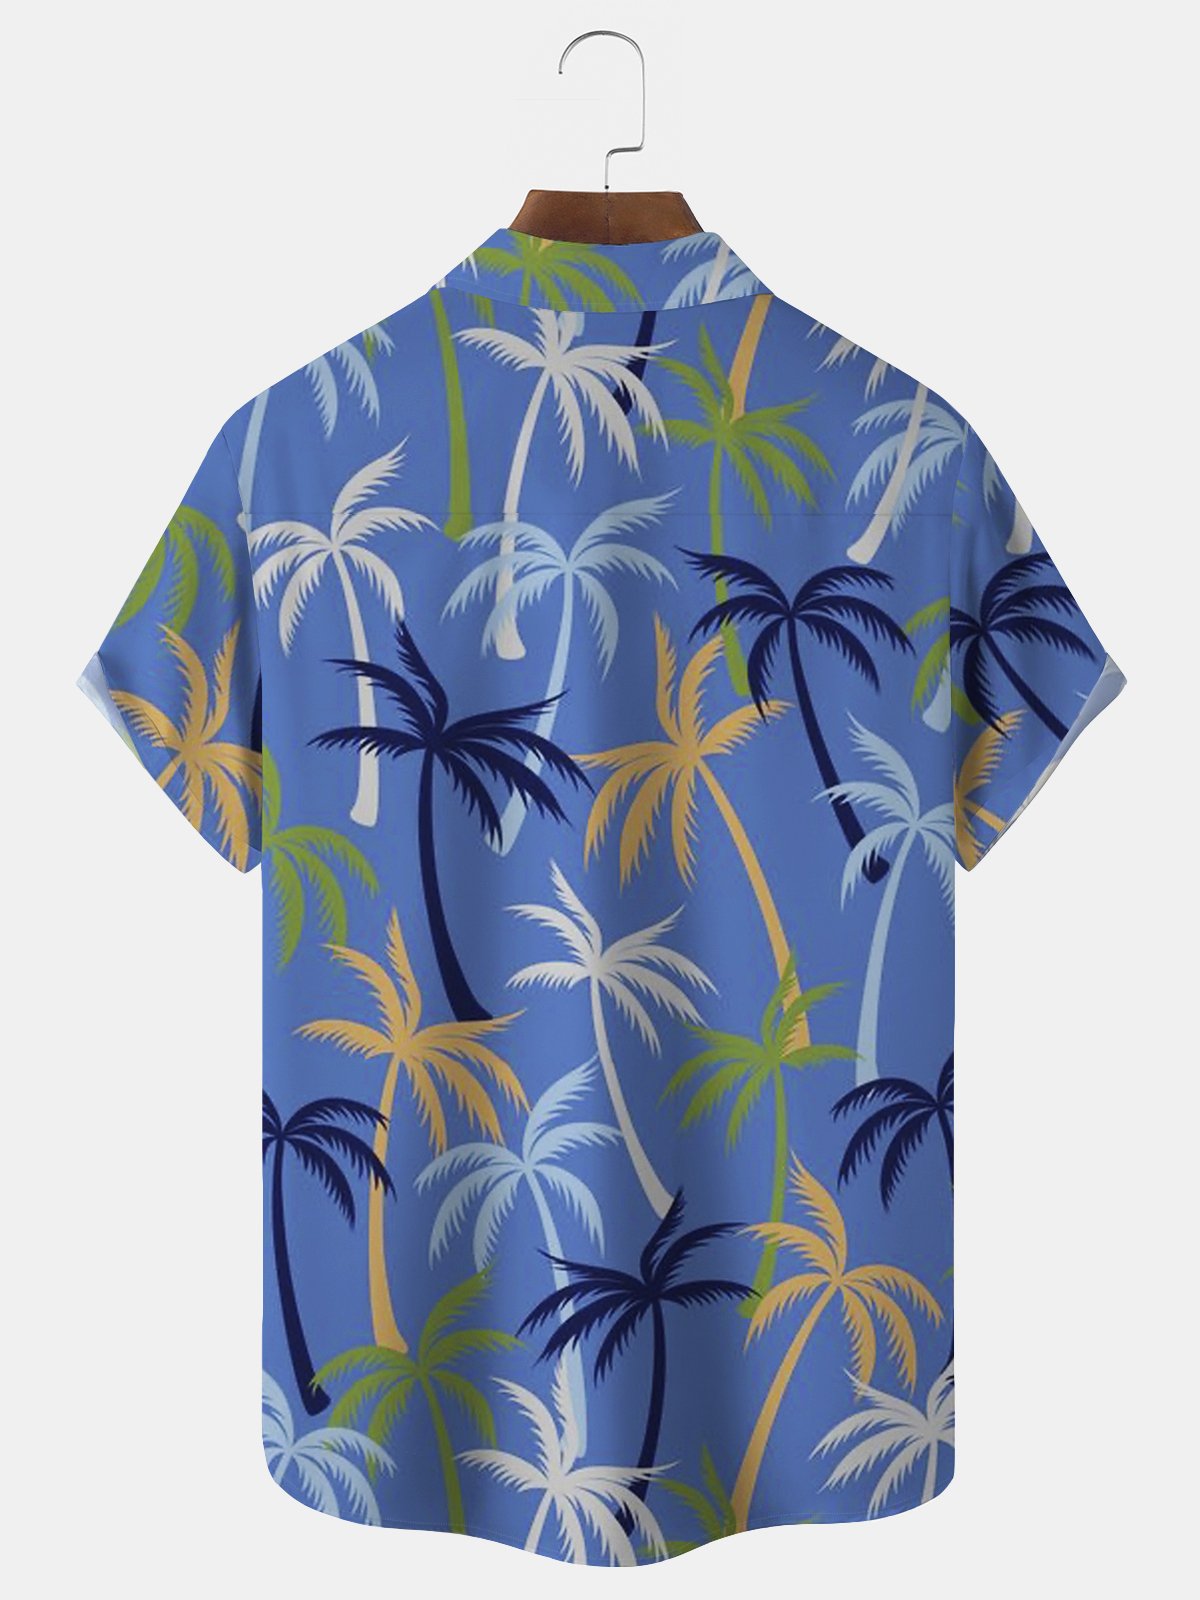 Royaura Beach Vacation Men's Hawaiian Shirts Coconut Tree Stretch Plus Size Aloha Casual Shirts